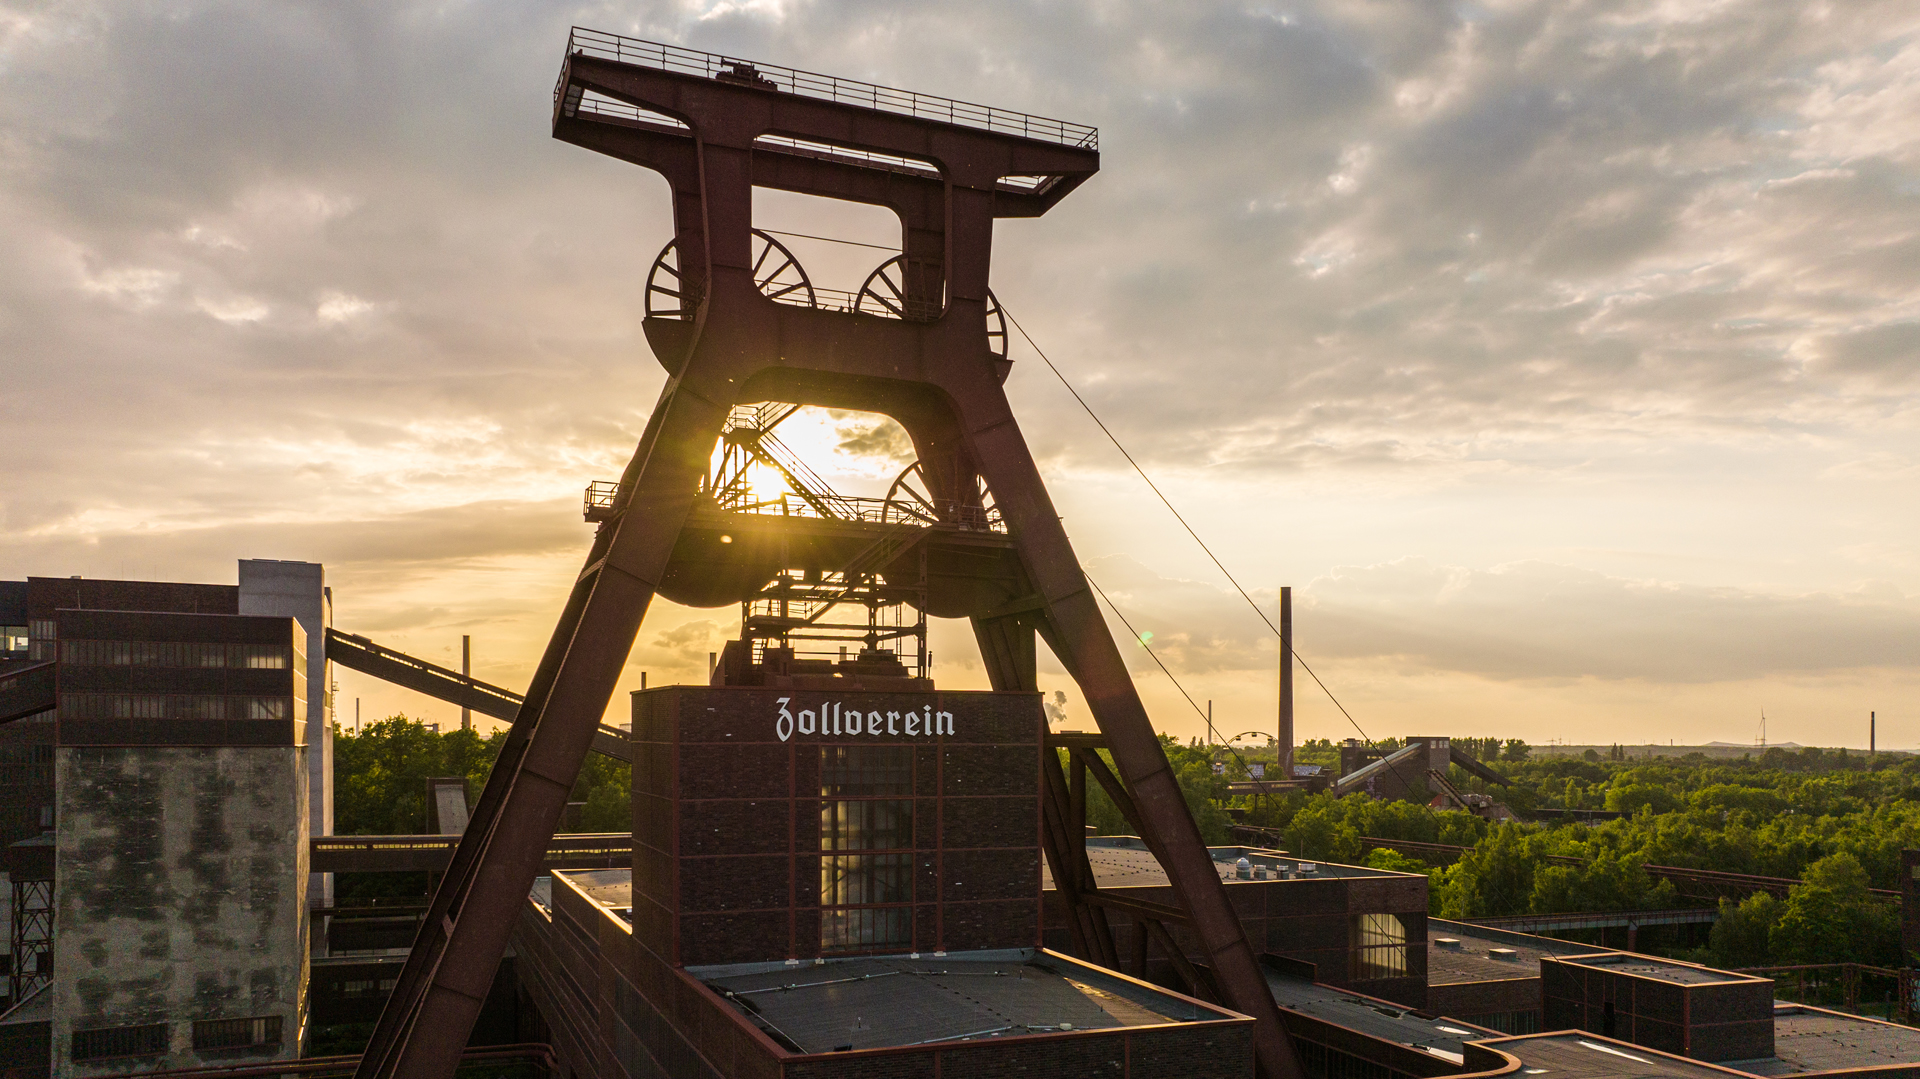 Der markante Doppelbock-Turm von Zeche Zollverein in Essen vor Sonnenuntergang. © Tourismus NRW e.V.